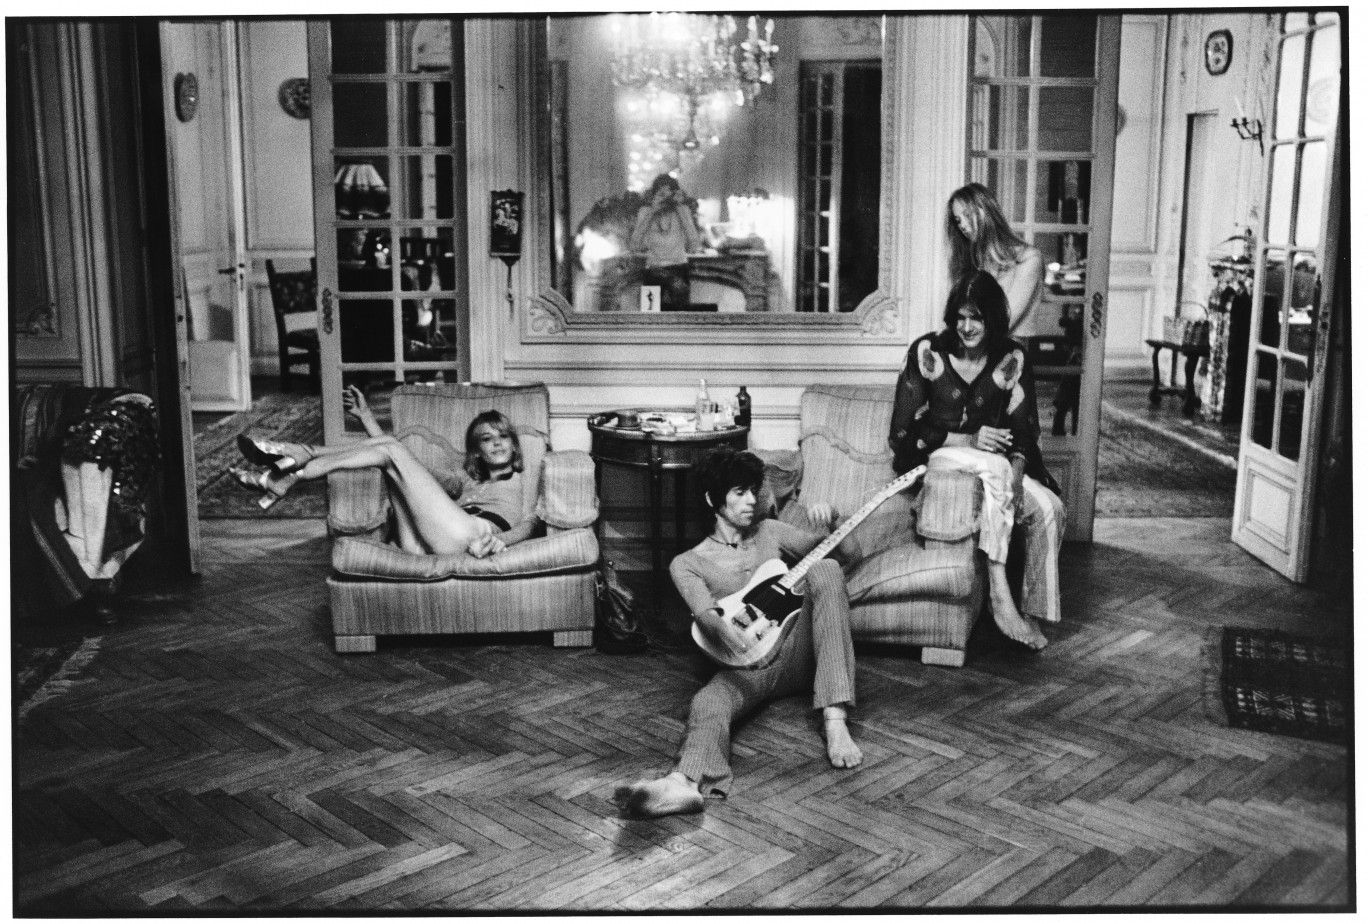 De gauche à droite : Anita Pallenberg, Keith Richards (avec la guitare offerte par Eric Clapton), Gram Parsons et sa compagne Gretchen Burrell, dans le salon de la villa Nellcote. On distingue Dominique Tarlé dans le reflet du miroir, 1971. © Dominique Tarlé